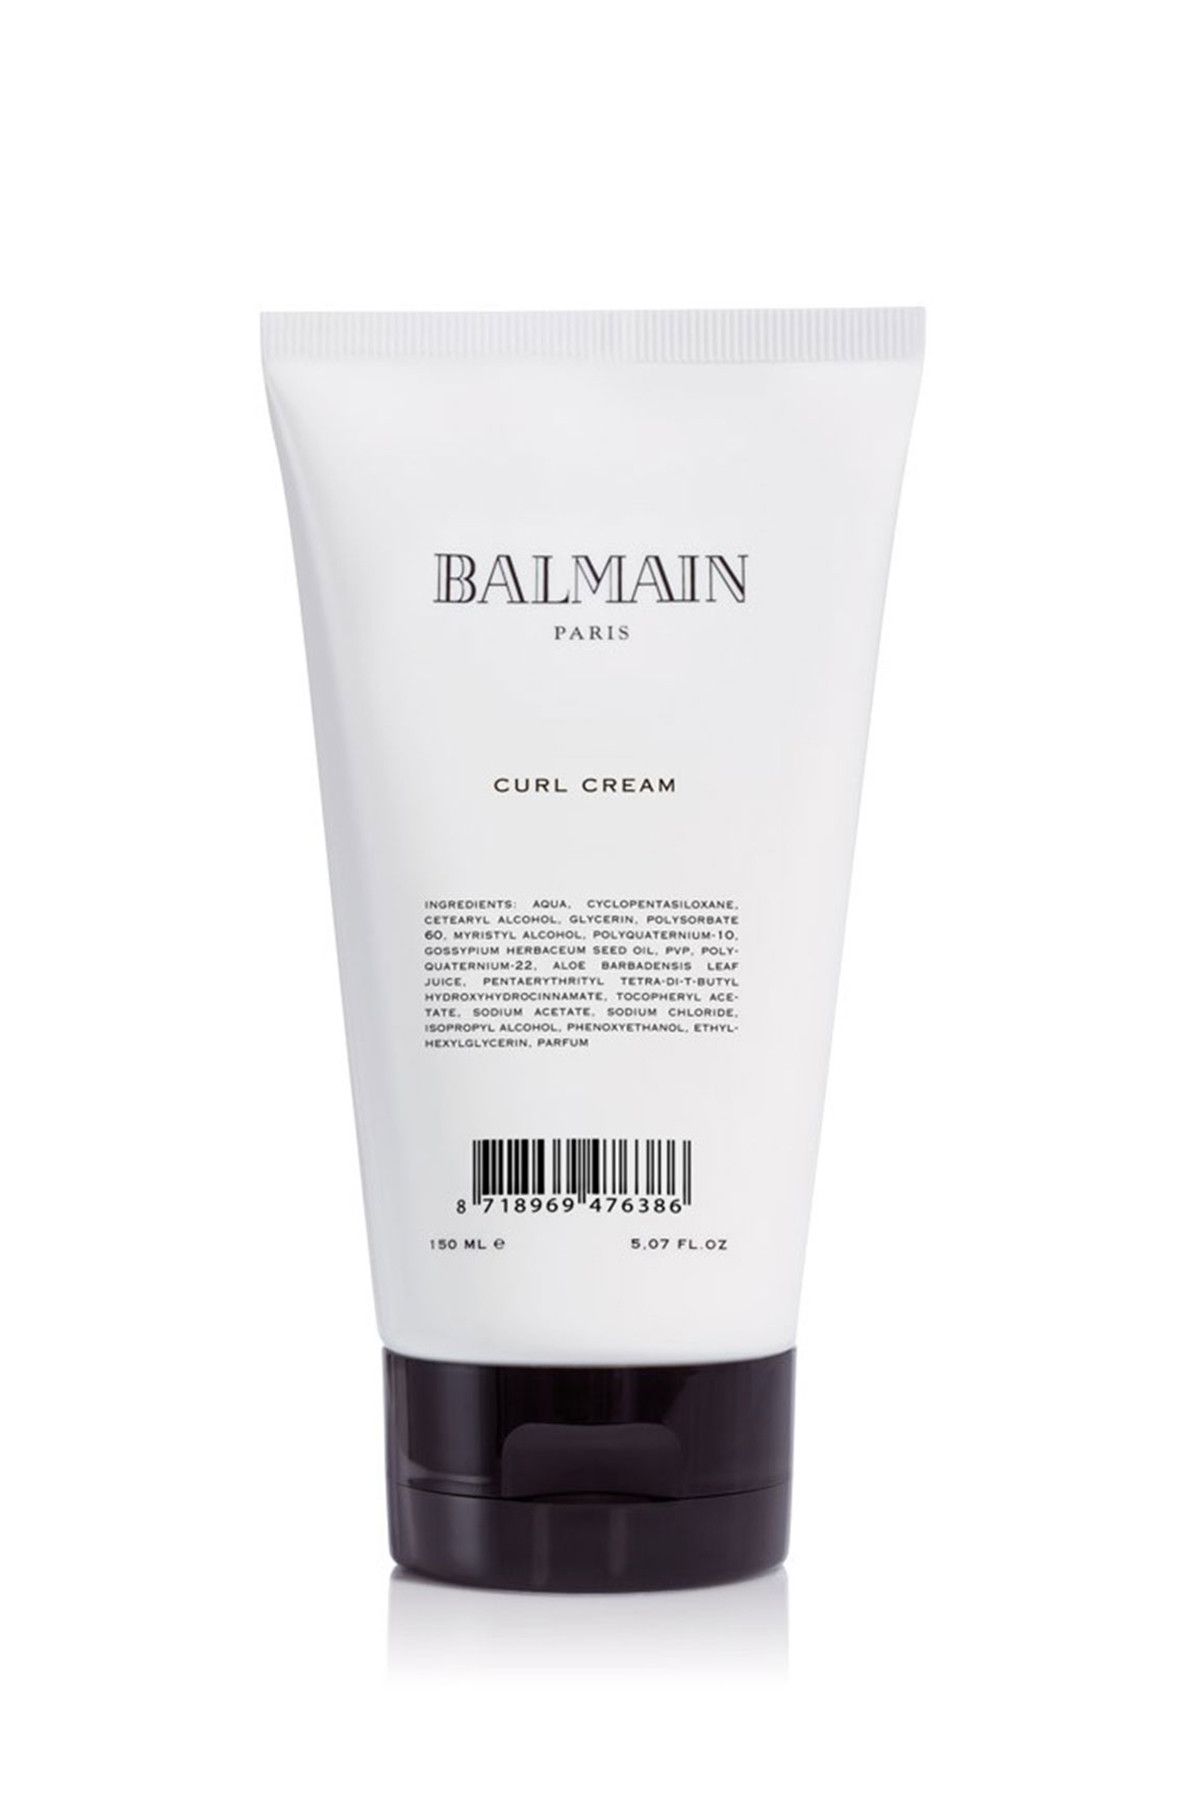 BALMAIN Hacimlendirici Saç Kremi - Curl Cream 150 ml 8718969476386